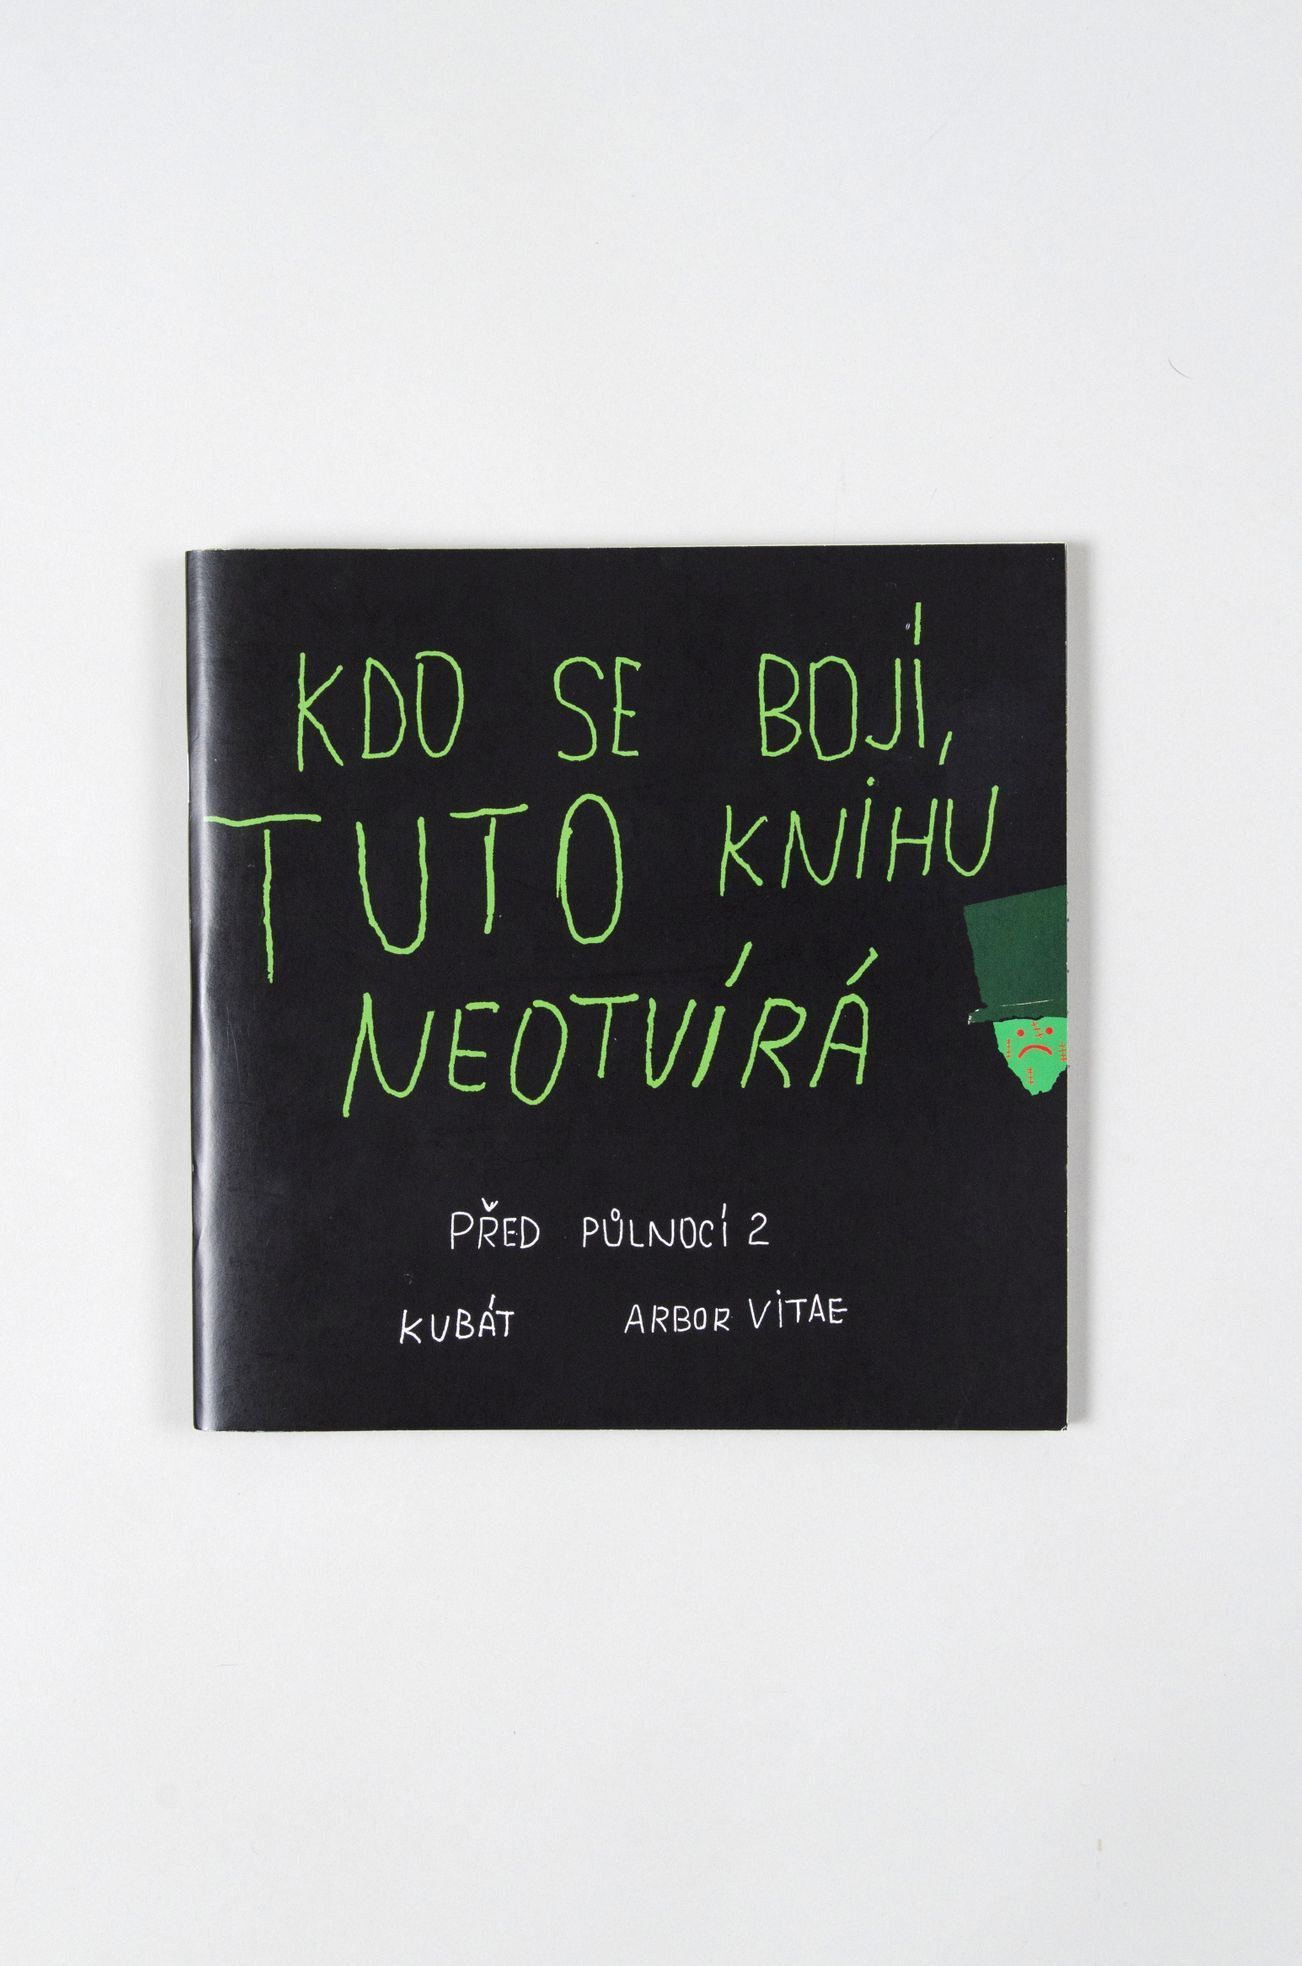 Nejkrásnější české knihy roku 2014